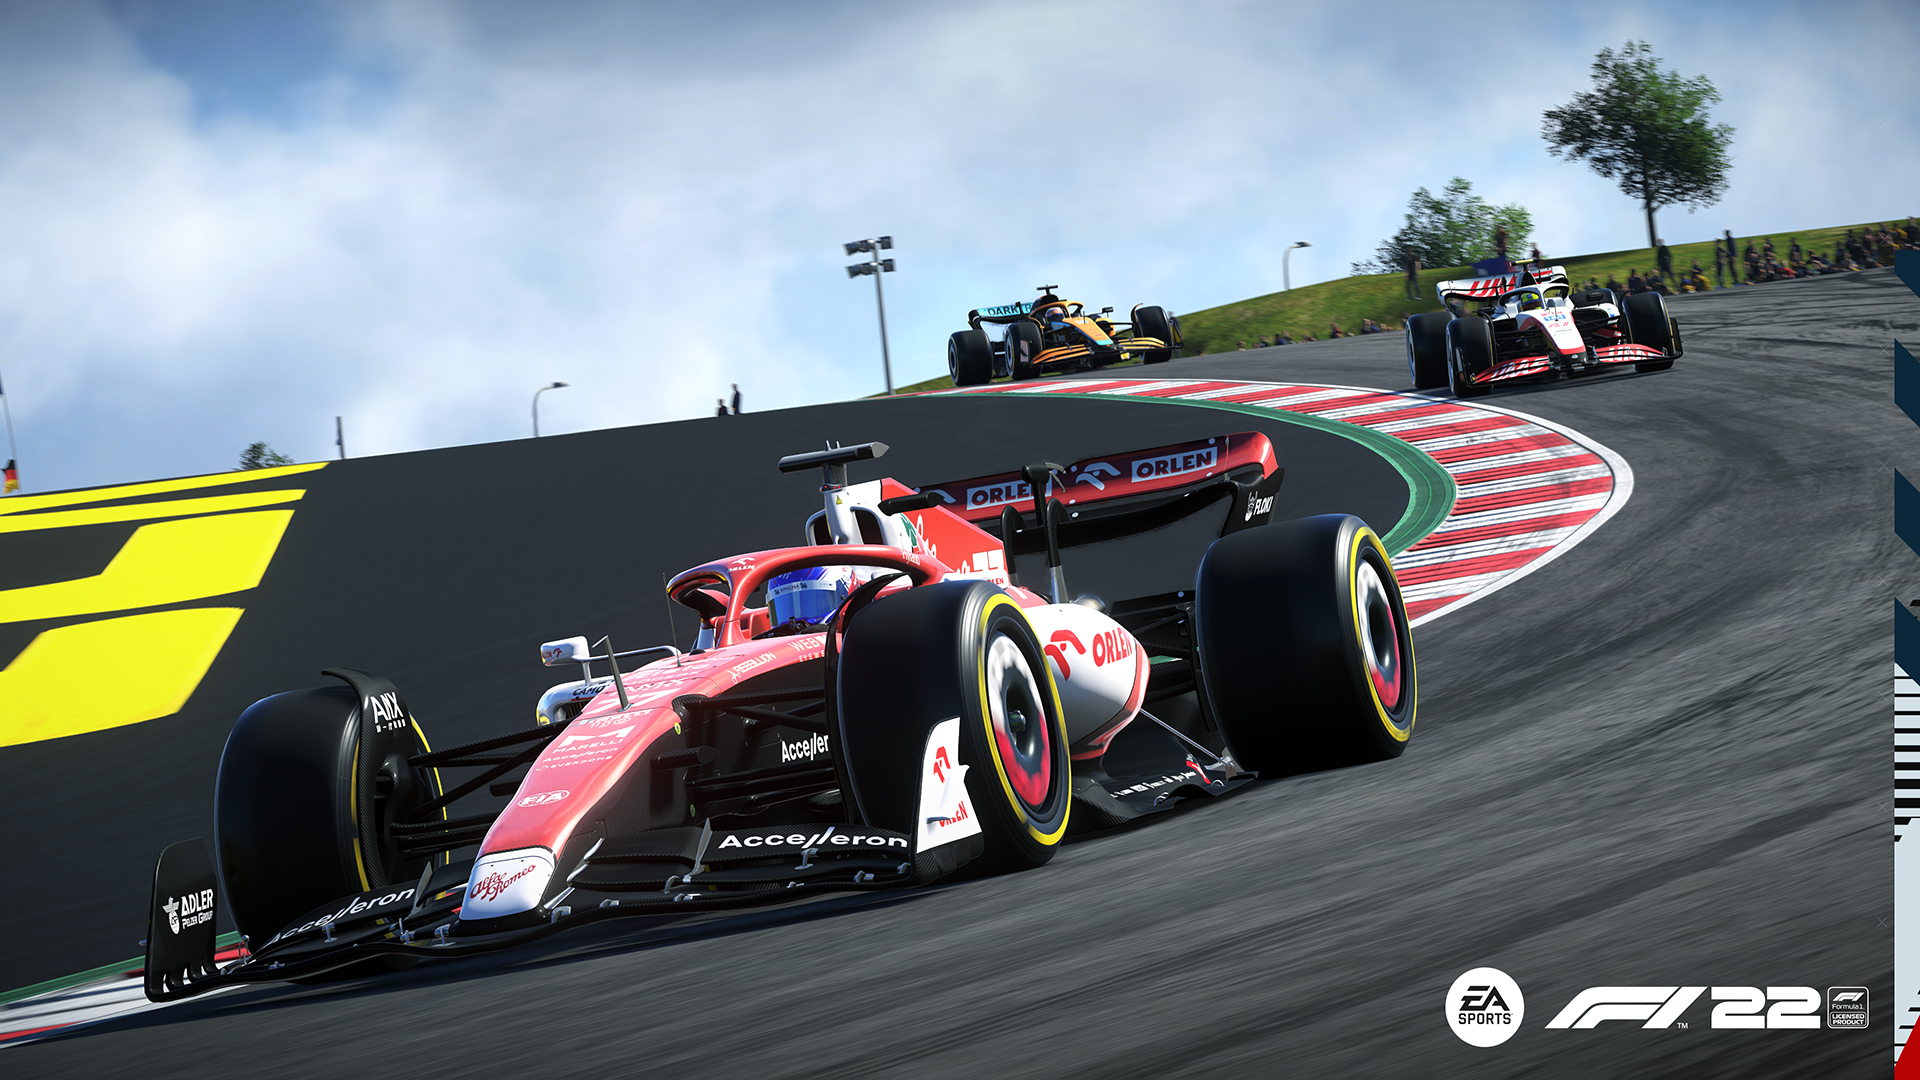 Car racing in F1 22